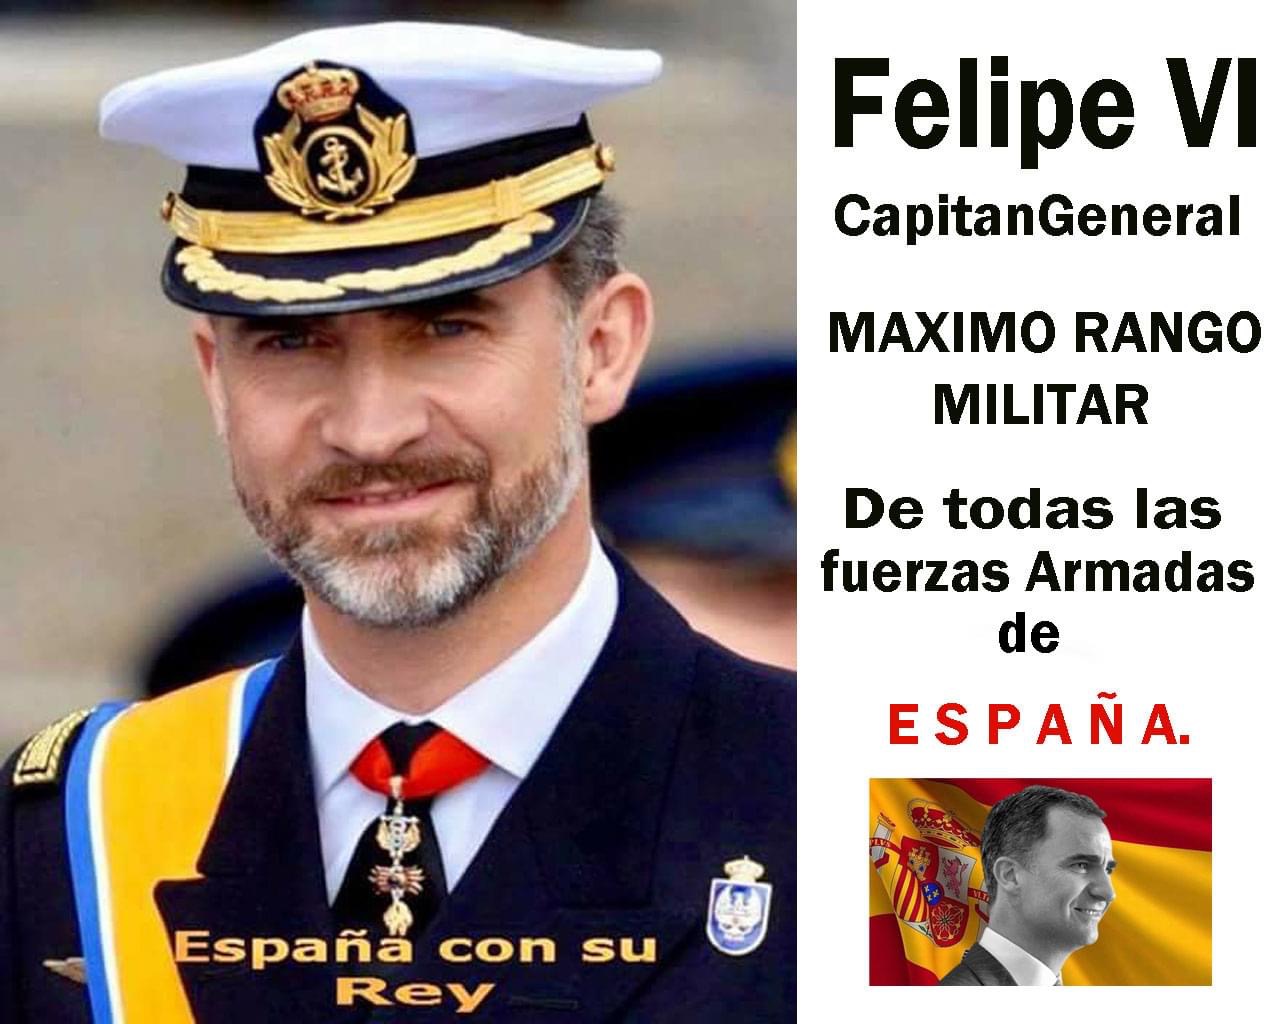 Millones de españoles indignados contra el gobierno de Sánchez miran al rey en espera de una solución que termine con el calvario de España